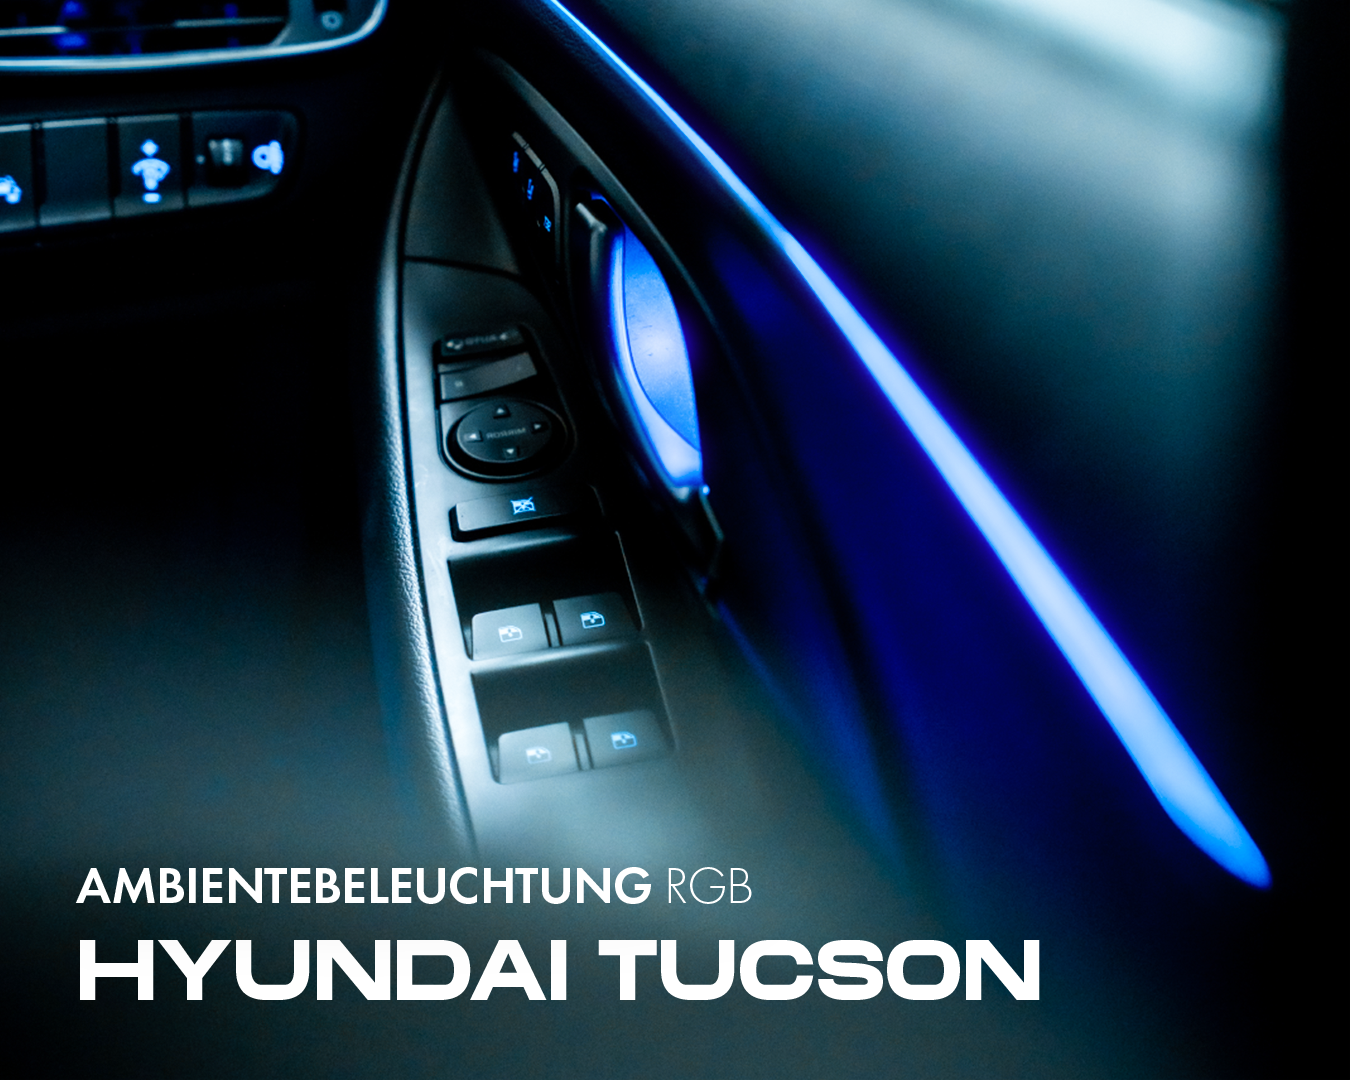 Hyundai Tucson retrofit ambient lighting RGB